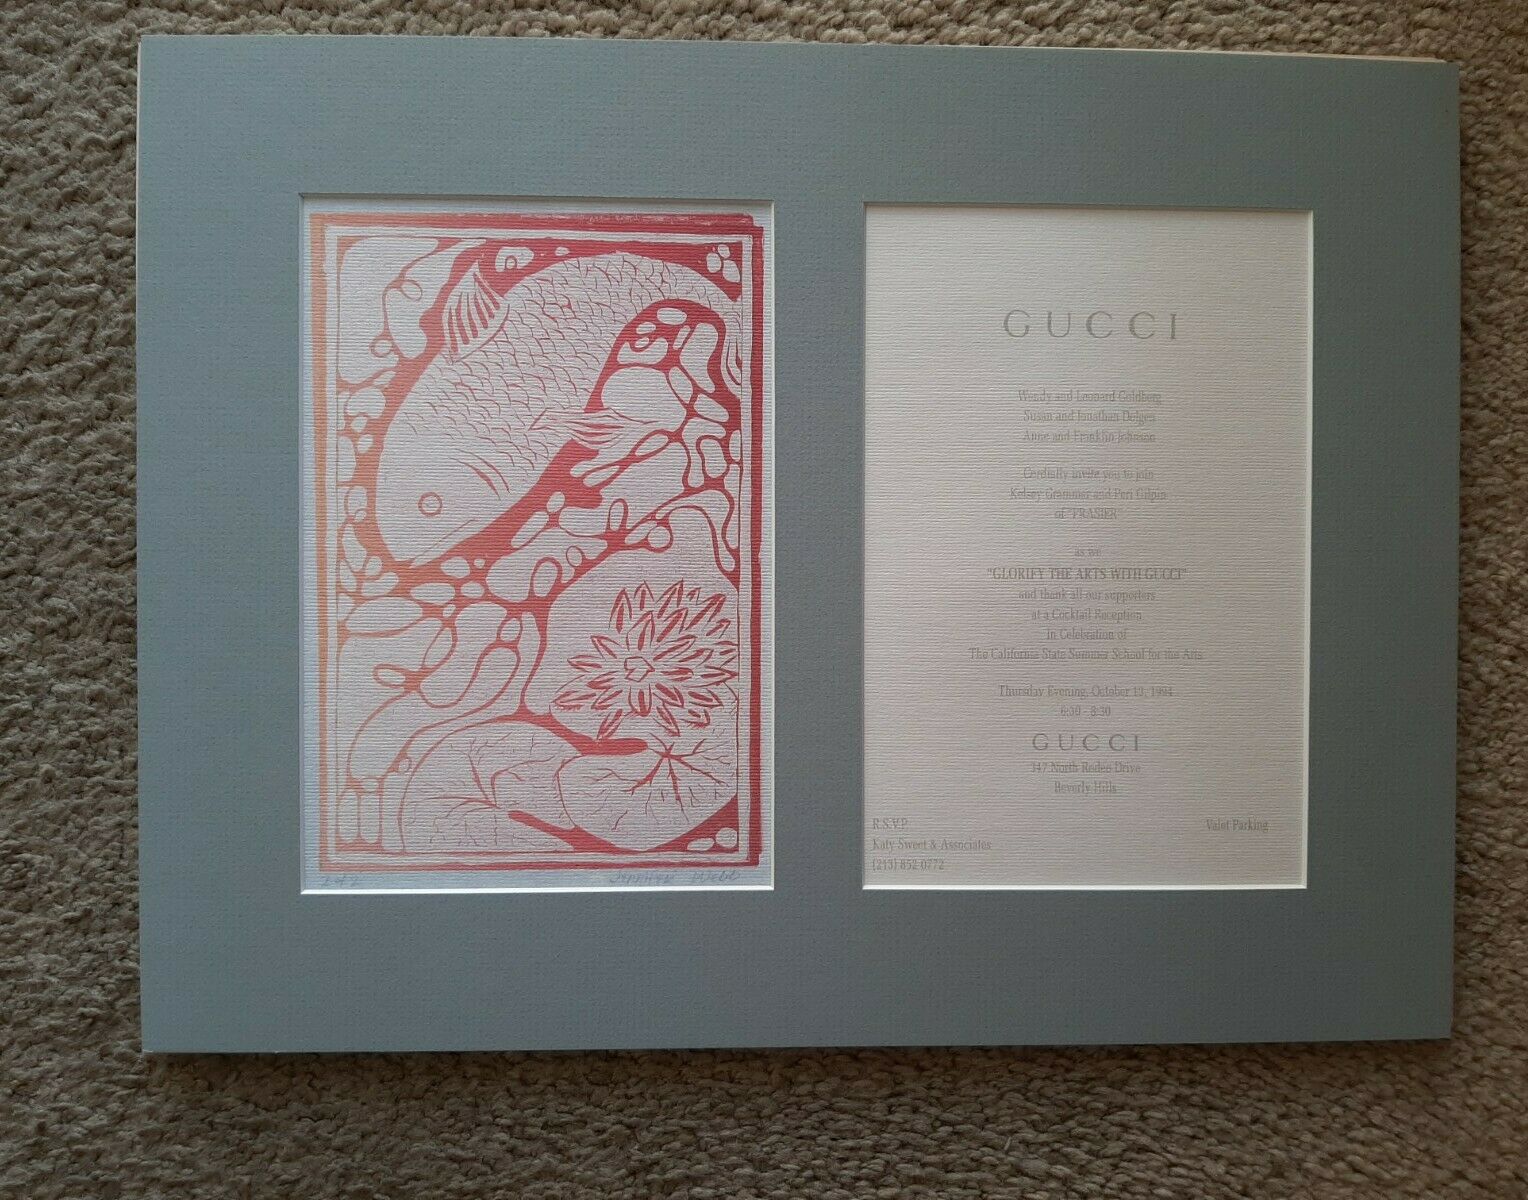 Rare Gucci Of Beverly Hills Invite "glorify The Arts With Gucci" 1994 W Artwork